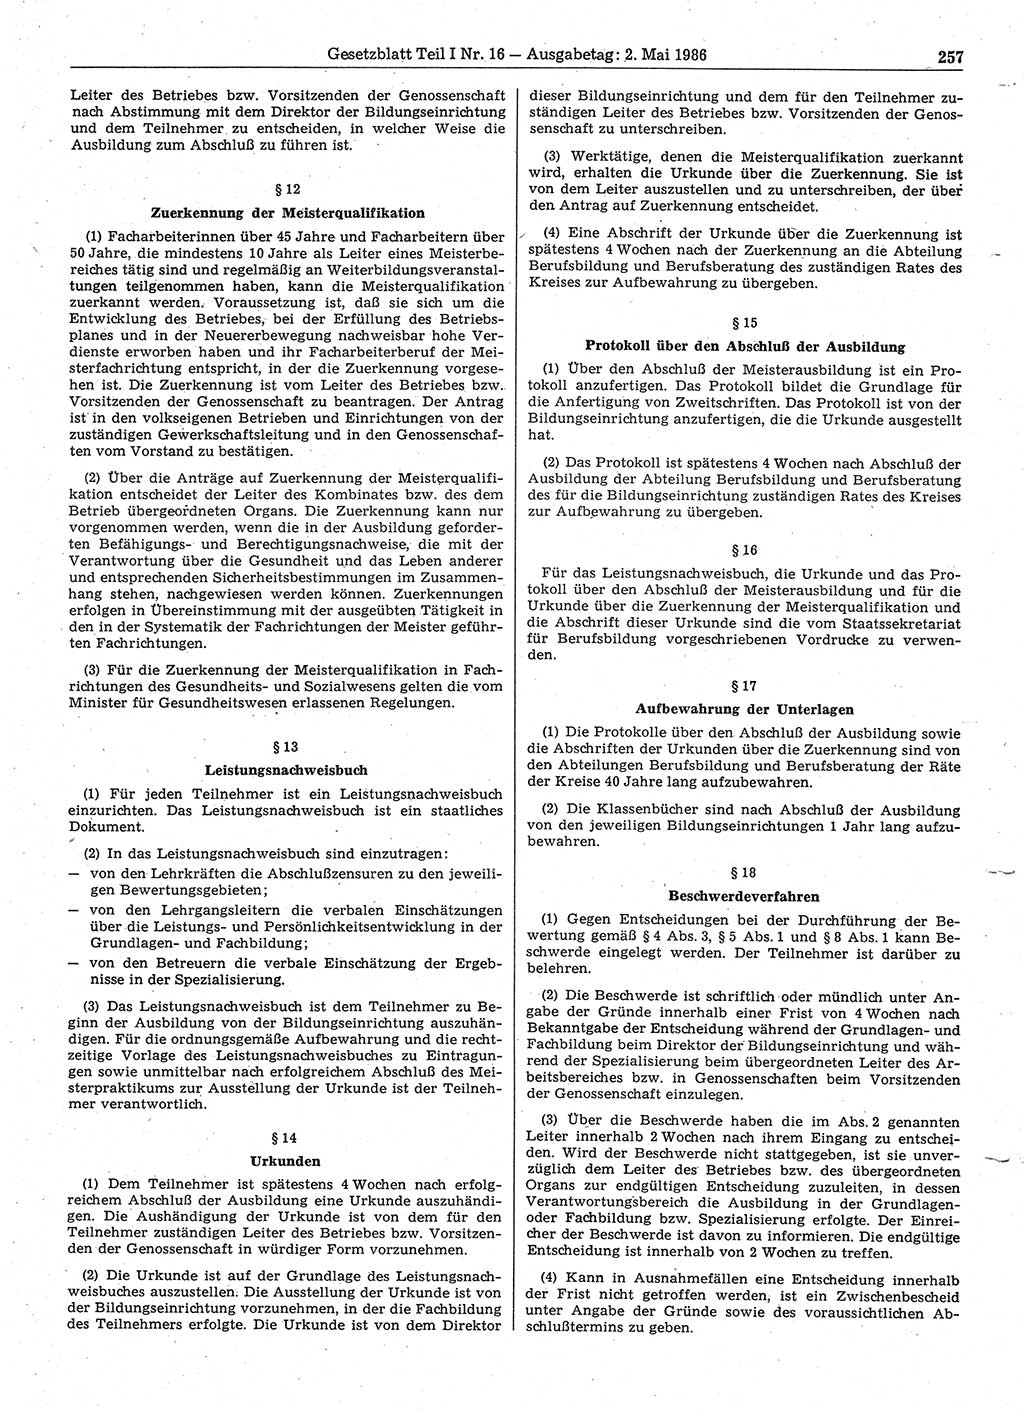 Gesetzblatt (GBl.) der Deutschen Demokratischen Republik (DDR) Teil Ⅰ 1986, Seite 257 (GBl. DDR Ⅰ 1986, S. 257)